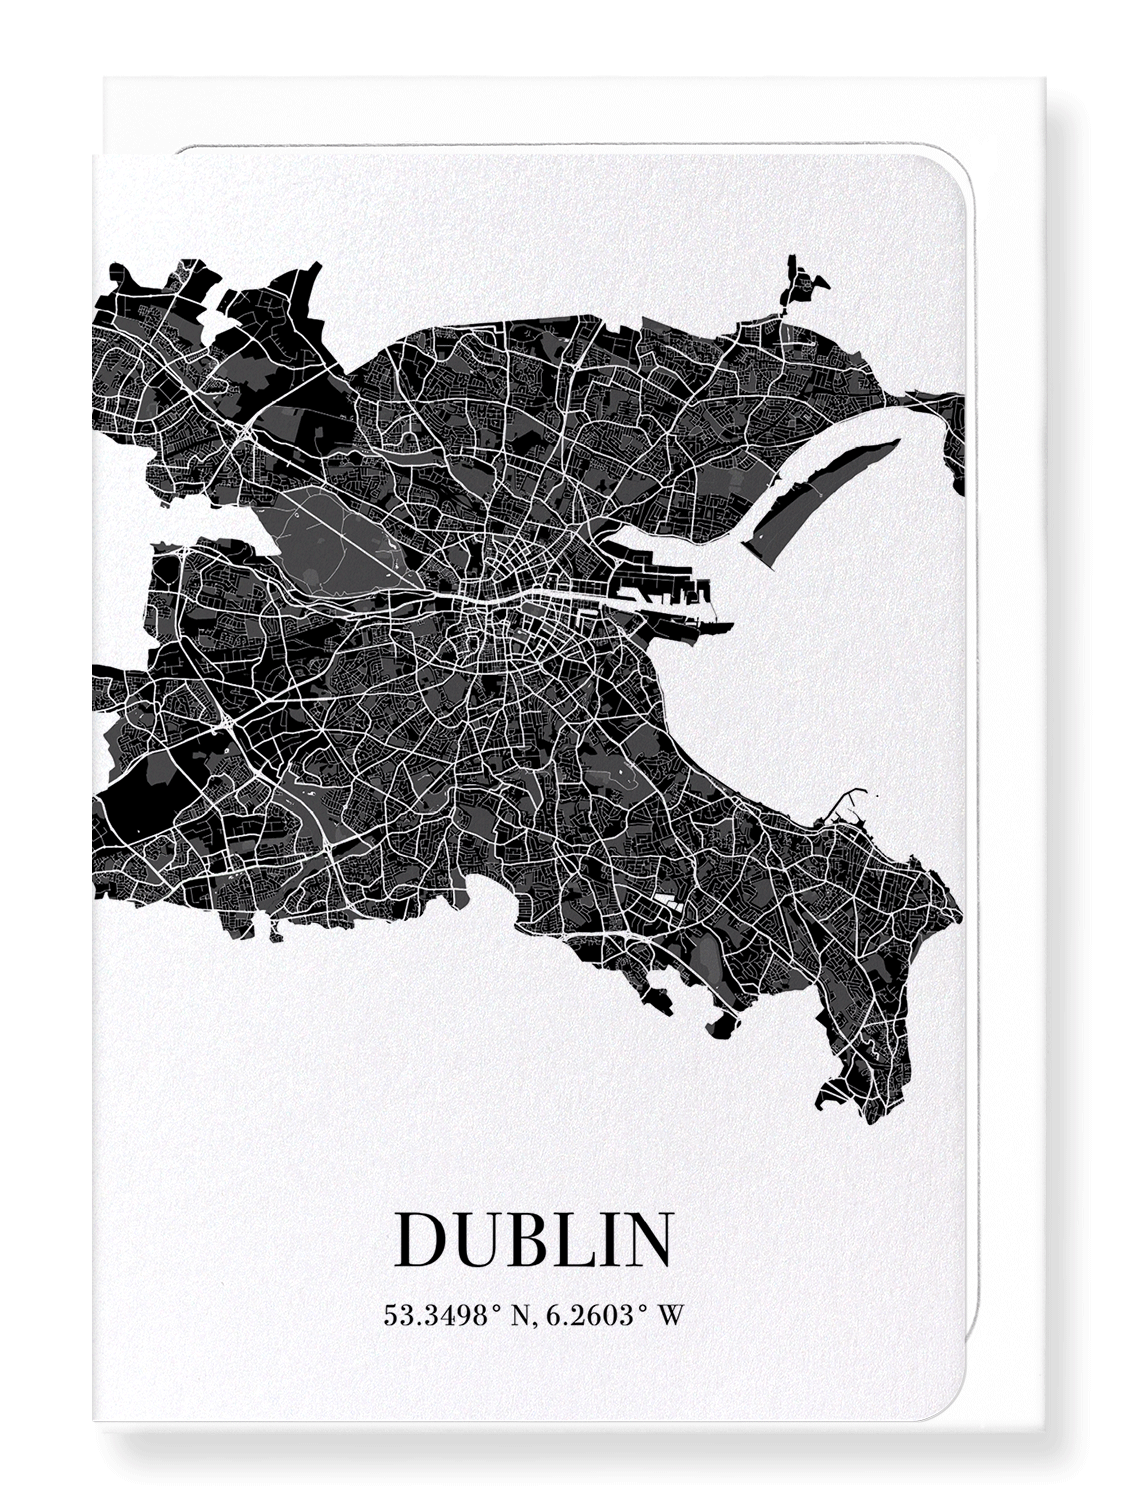 DUBLIN CUTOUT: Map Cutout Greeting Card